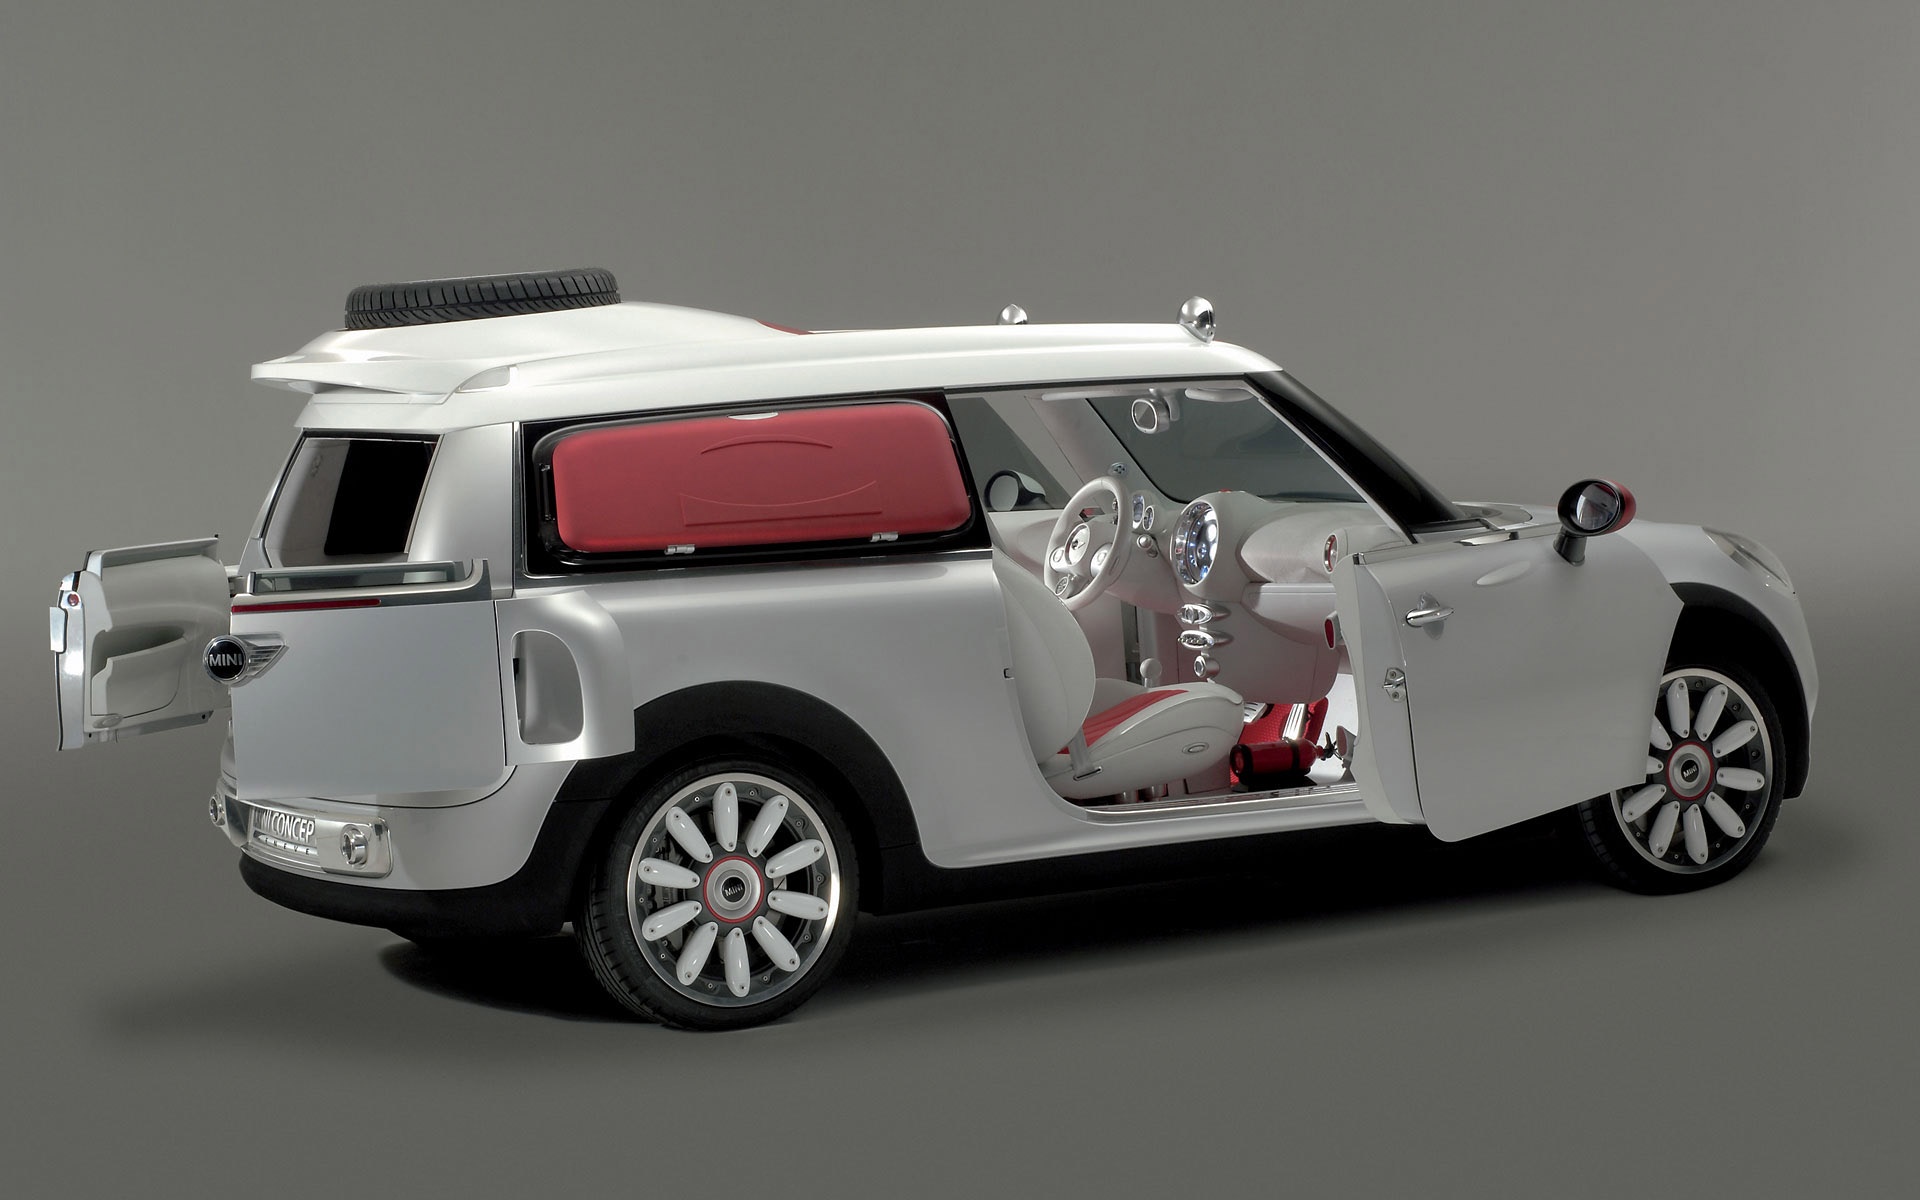 汽车天下,MINI,Concept,汽车,宽屏,概念车,2012Y十一月12D,儿童桌面专用